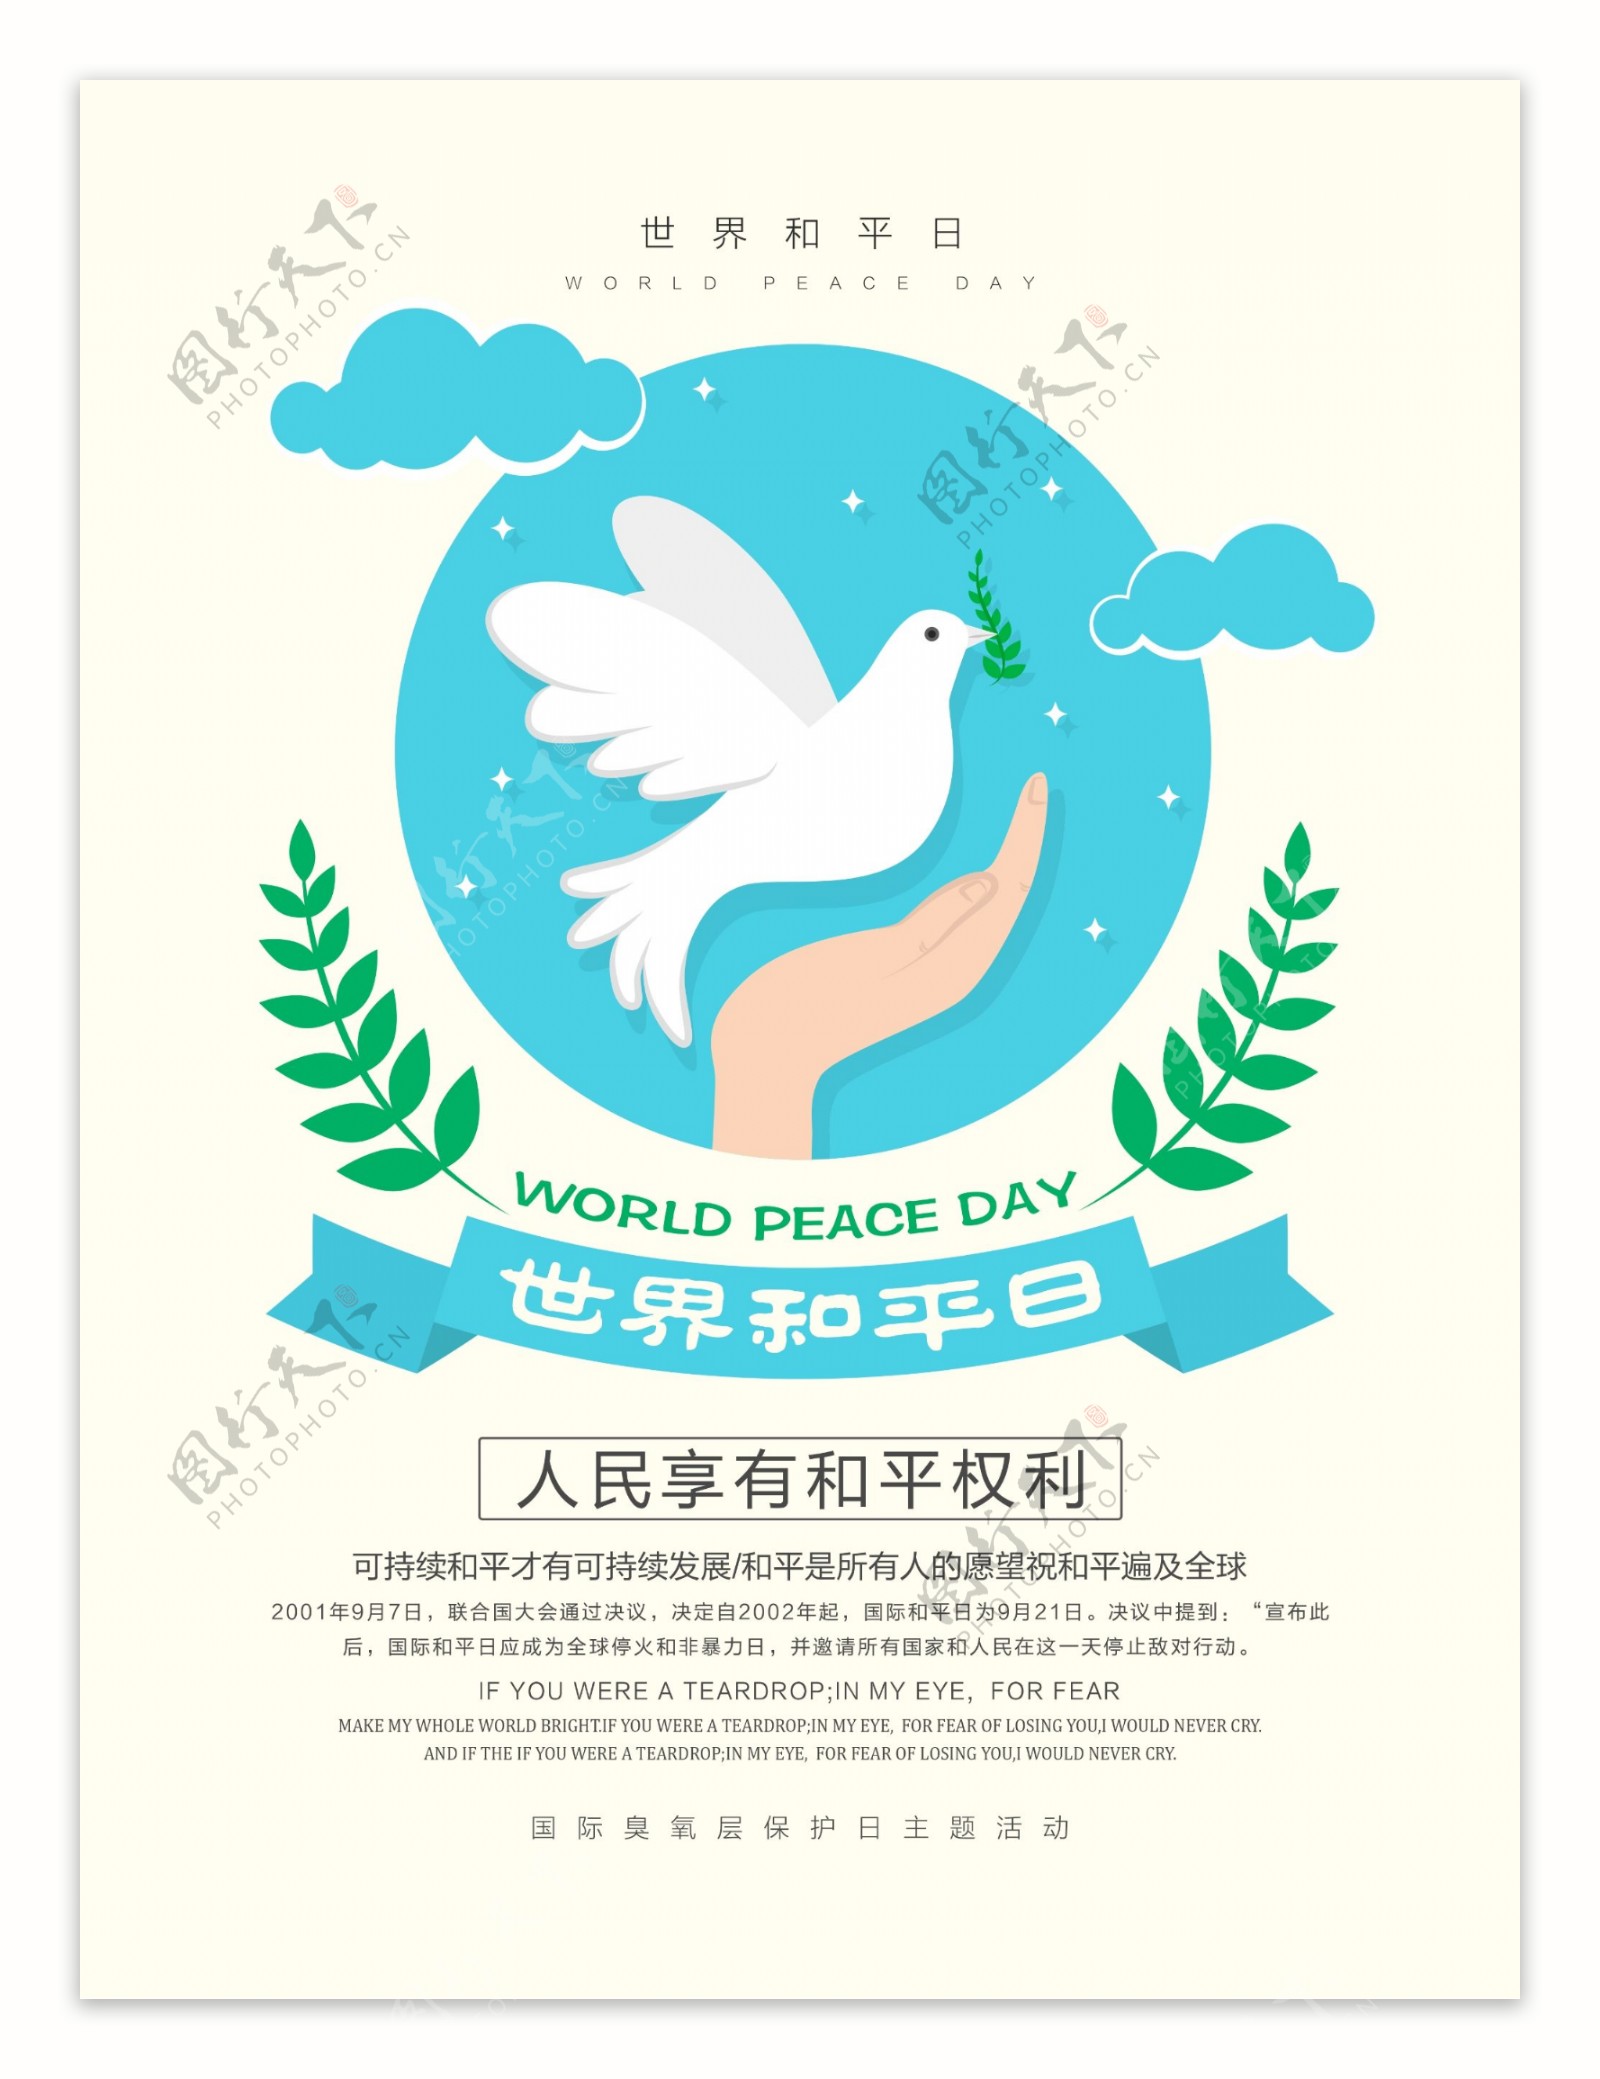 清新简约世界和平日宣传海报设计